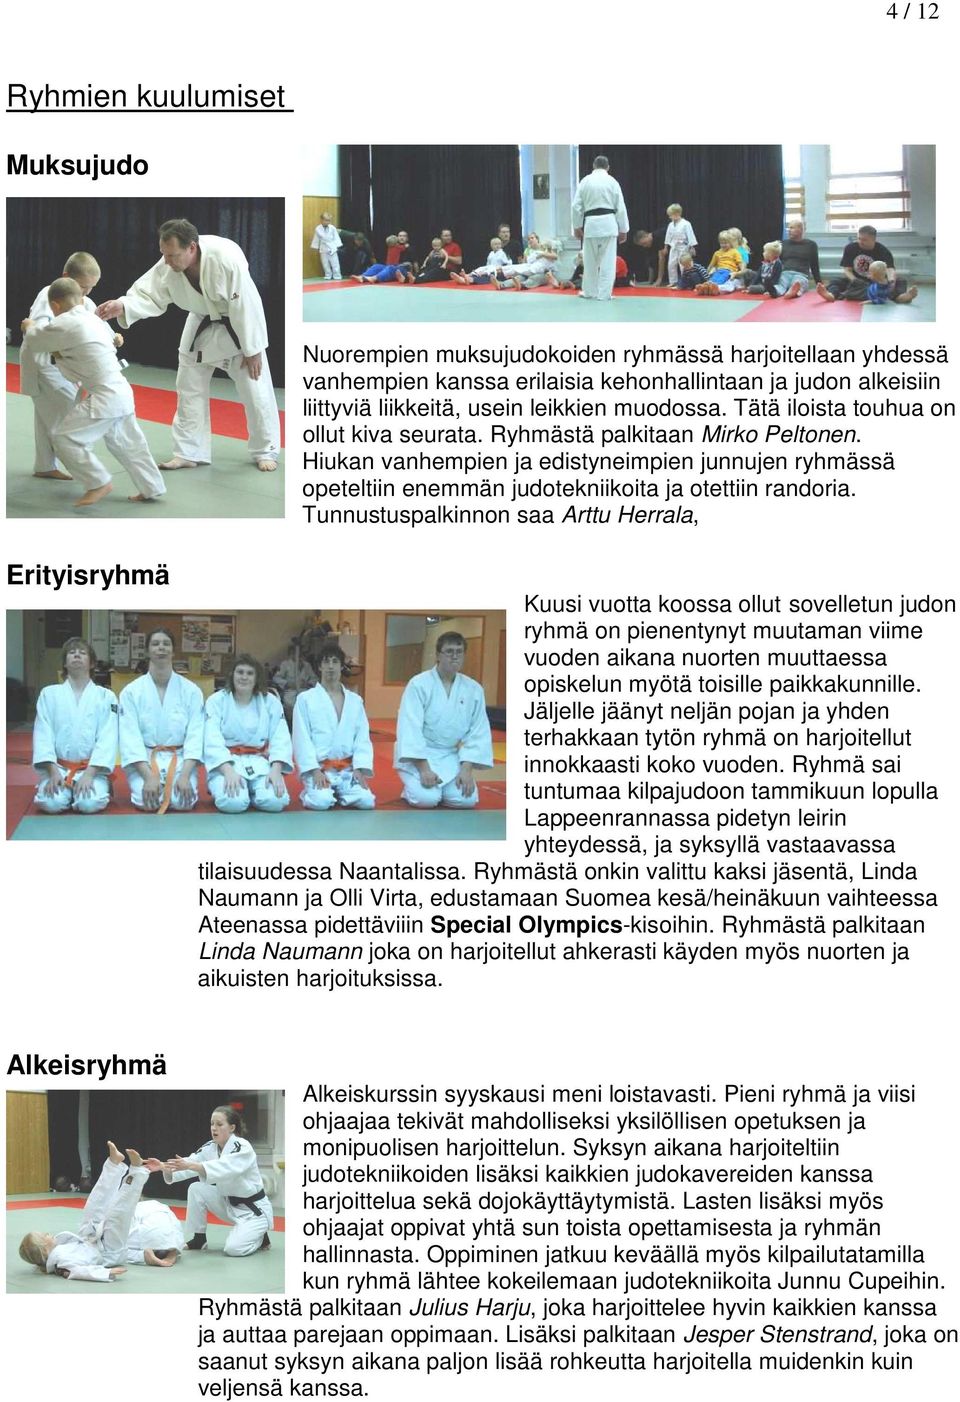 Tunnustuspalkinnon saa Arttu Herrala, Erityisryhmä Kuusi vuotta koossa ollut sovelletun judon ryhmä on pienentynyt muutaman viime vuoden aikana nuorten muuttaessa opiskelun myötä toisille